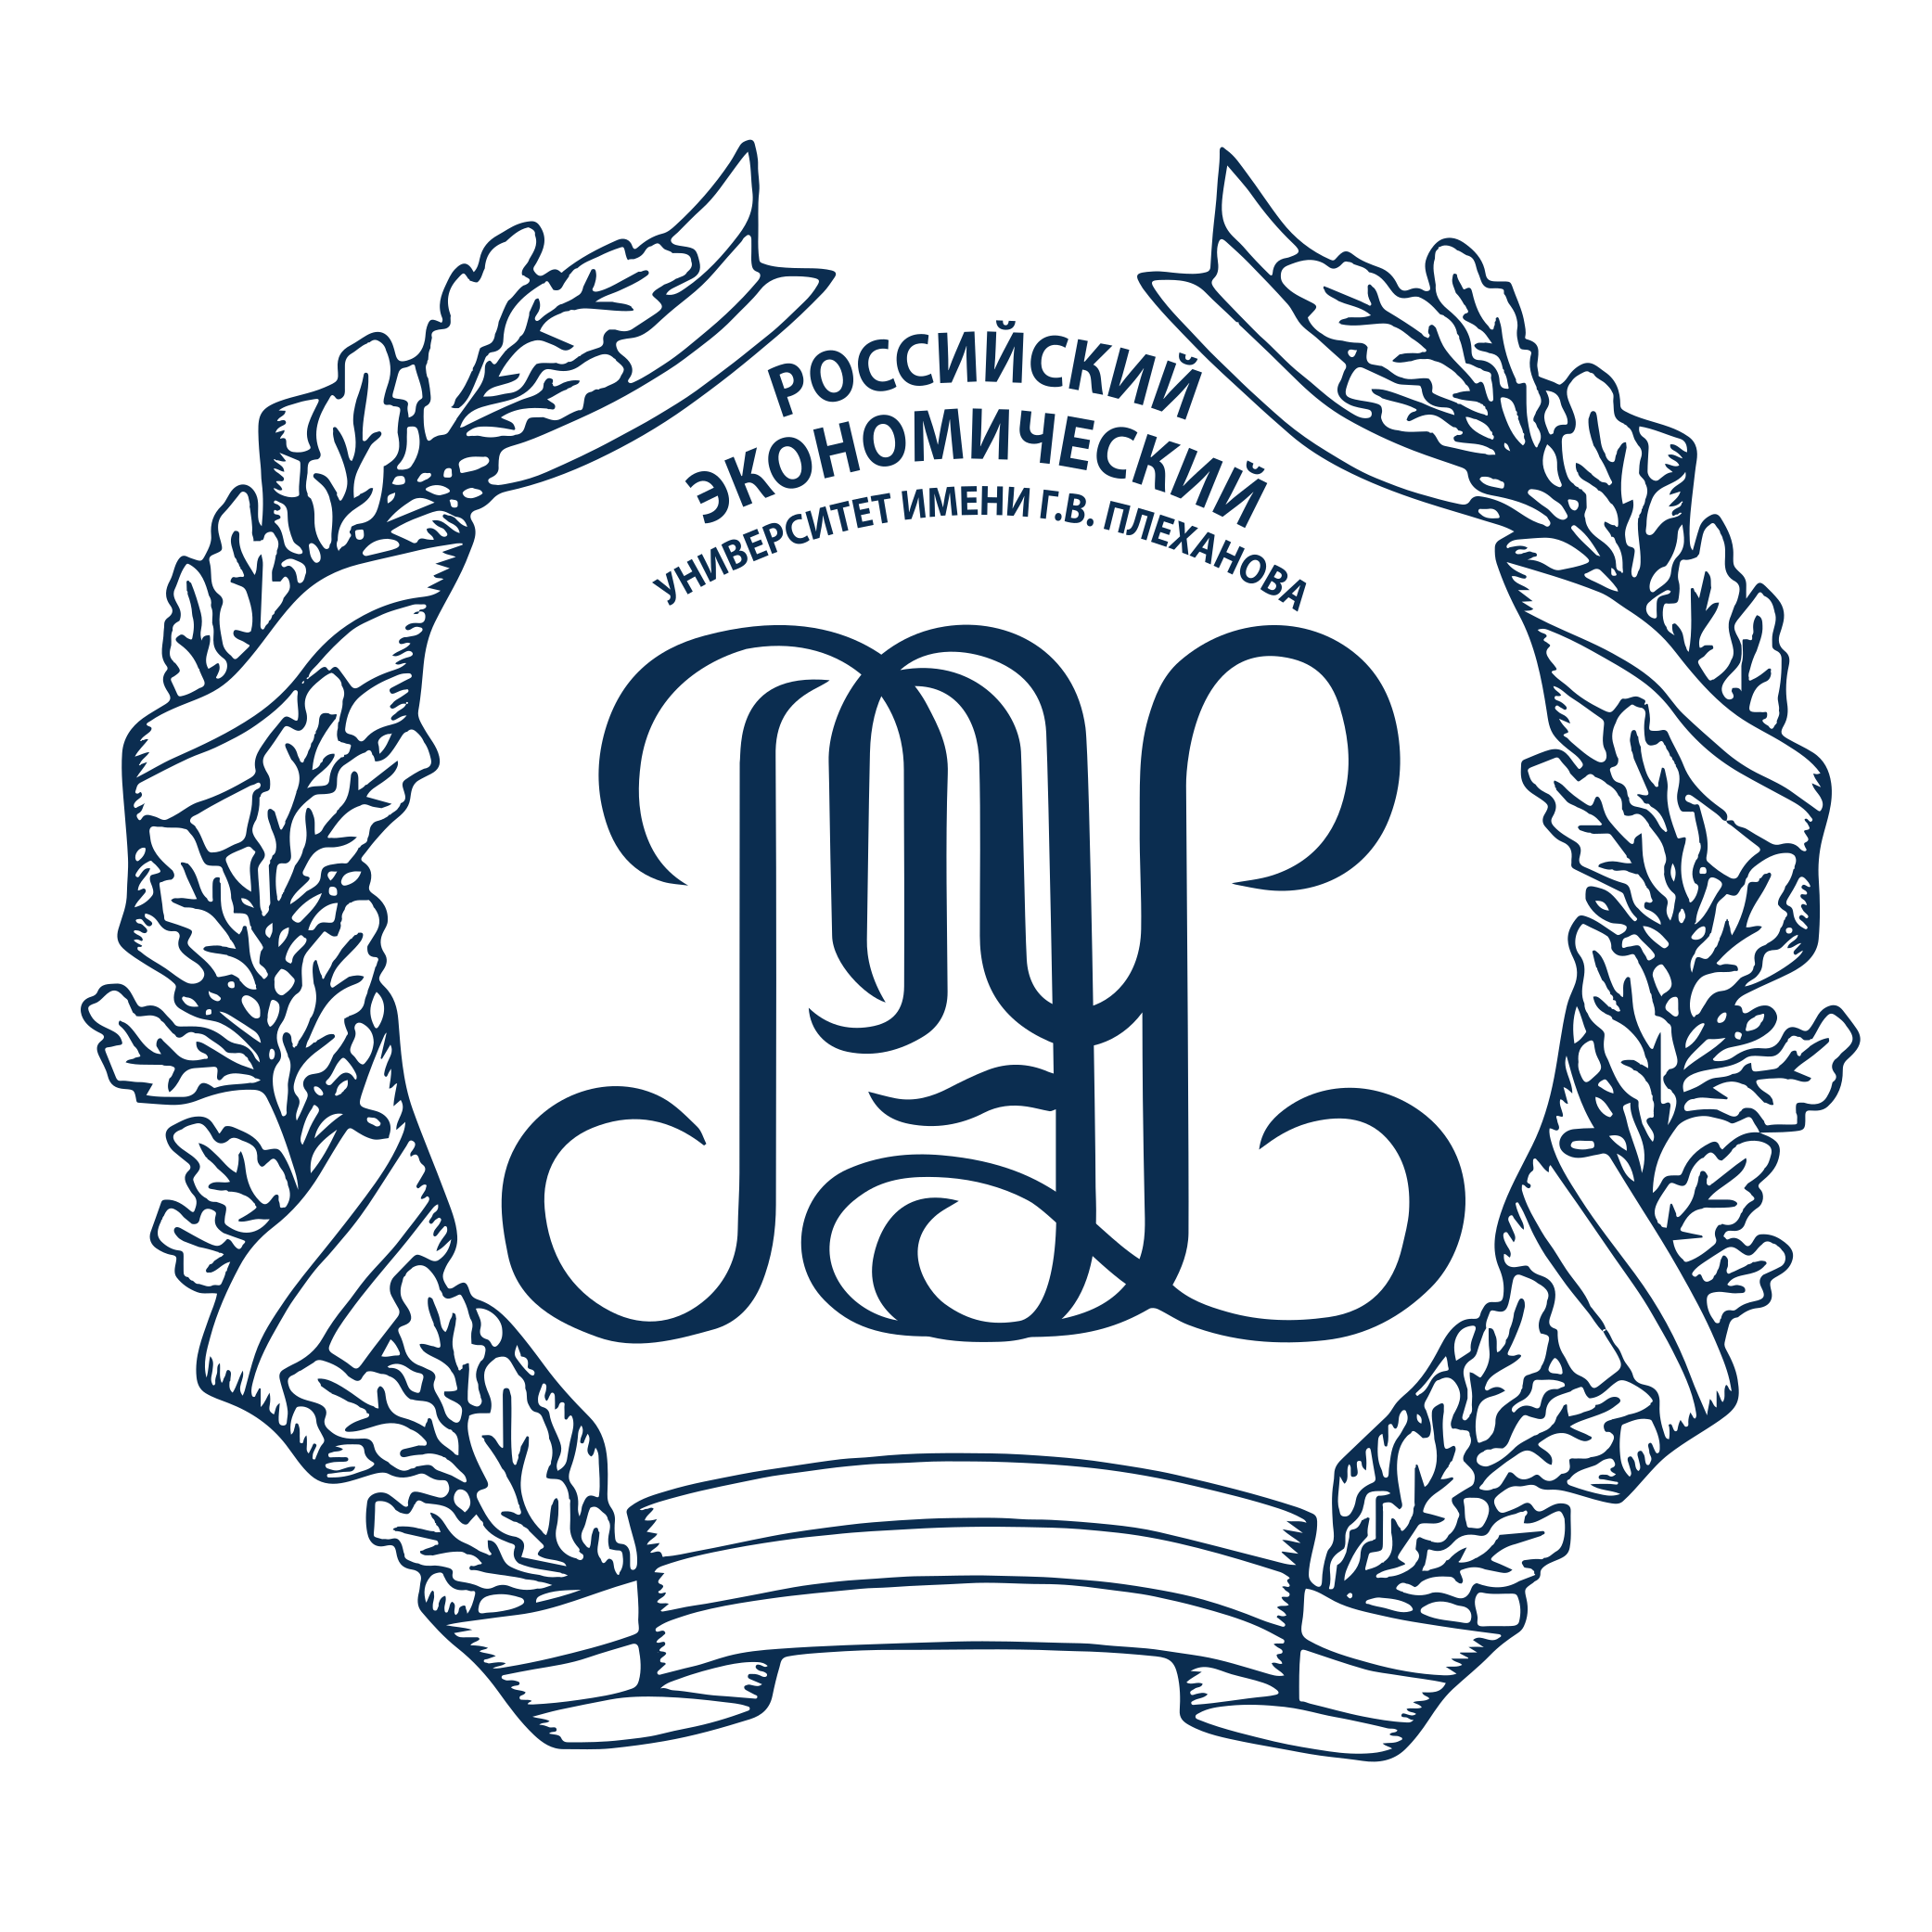 Российский экономический университет им. Г.В. Плеханова logo